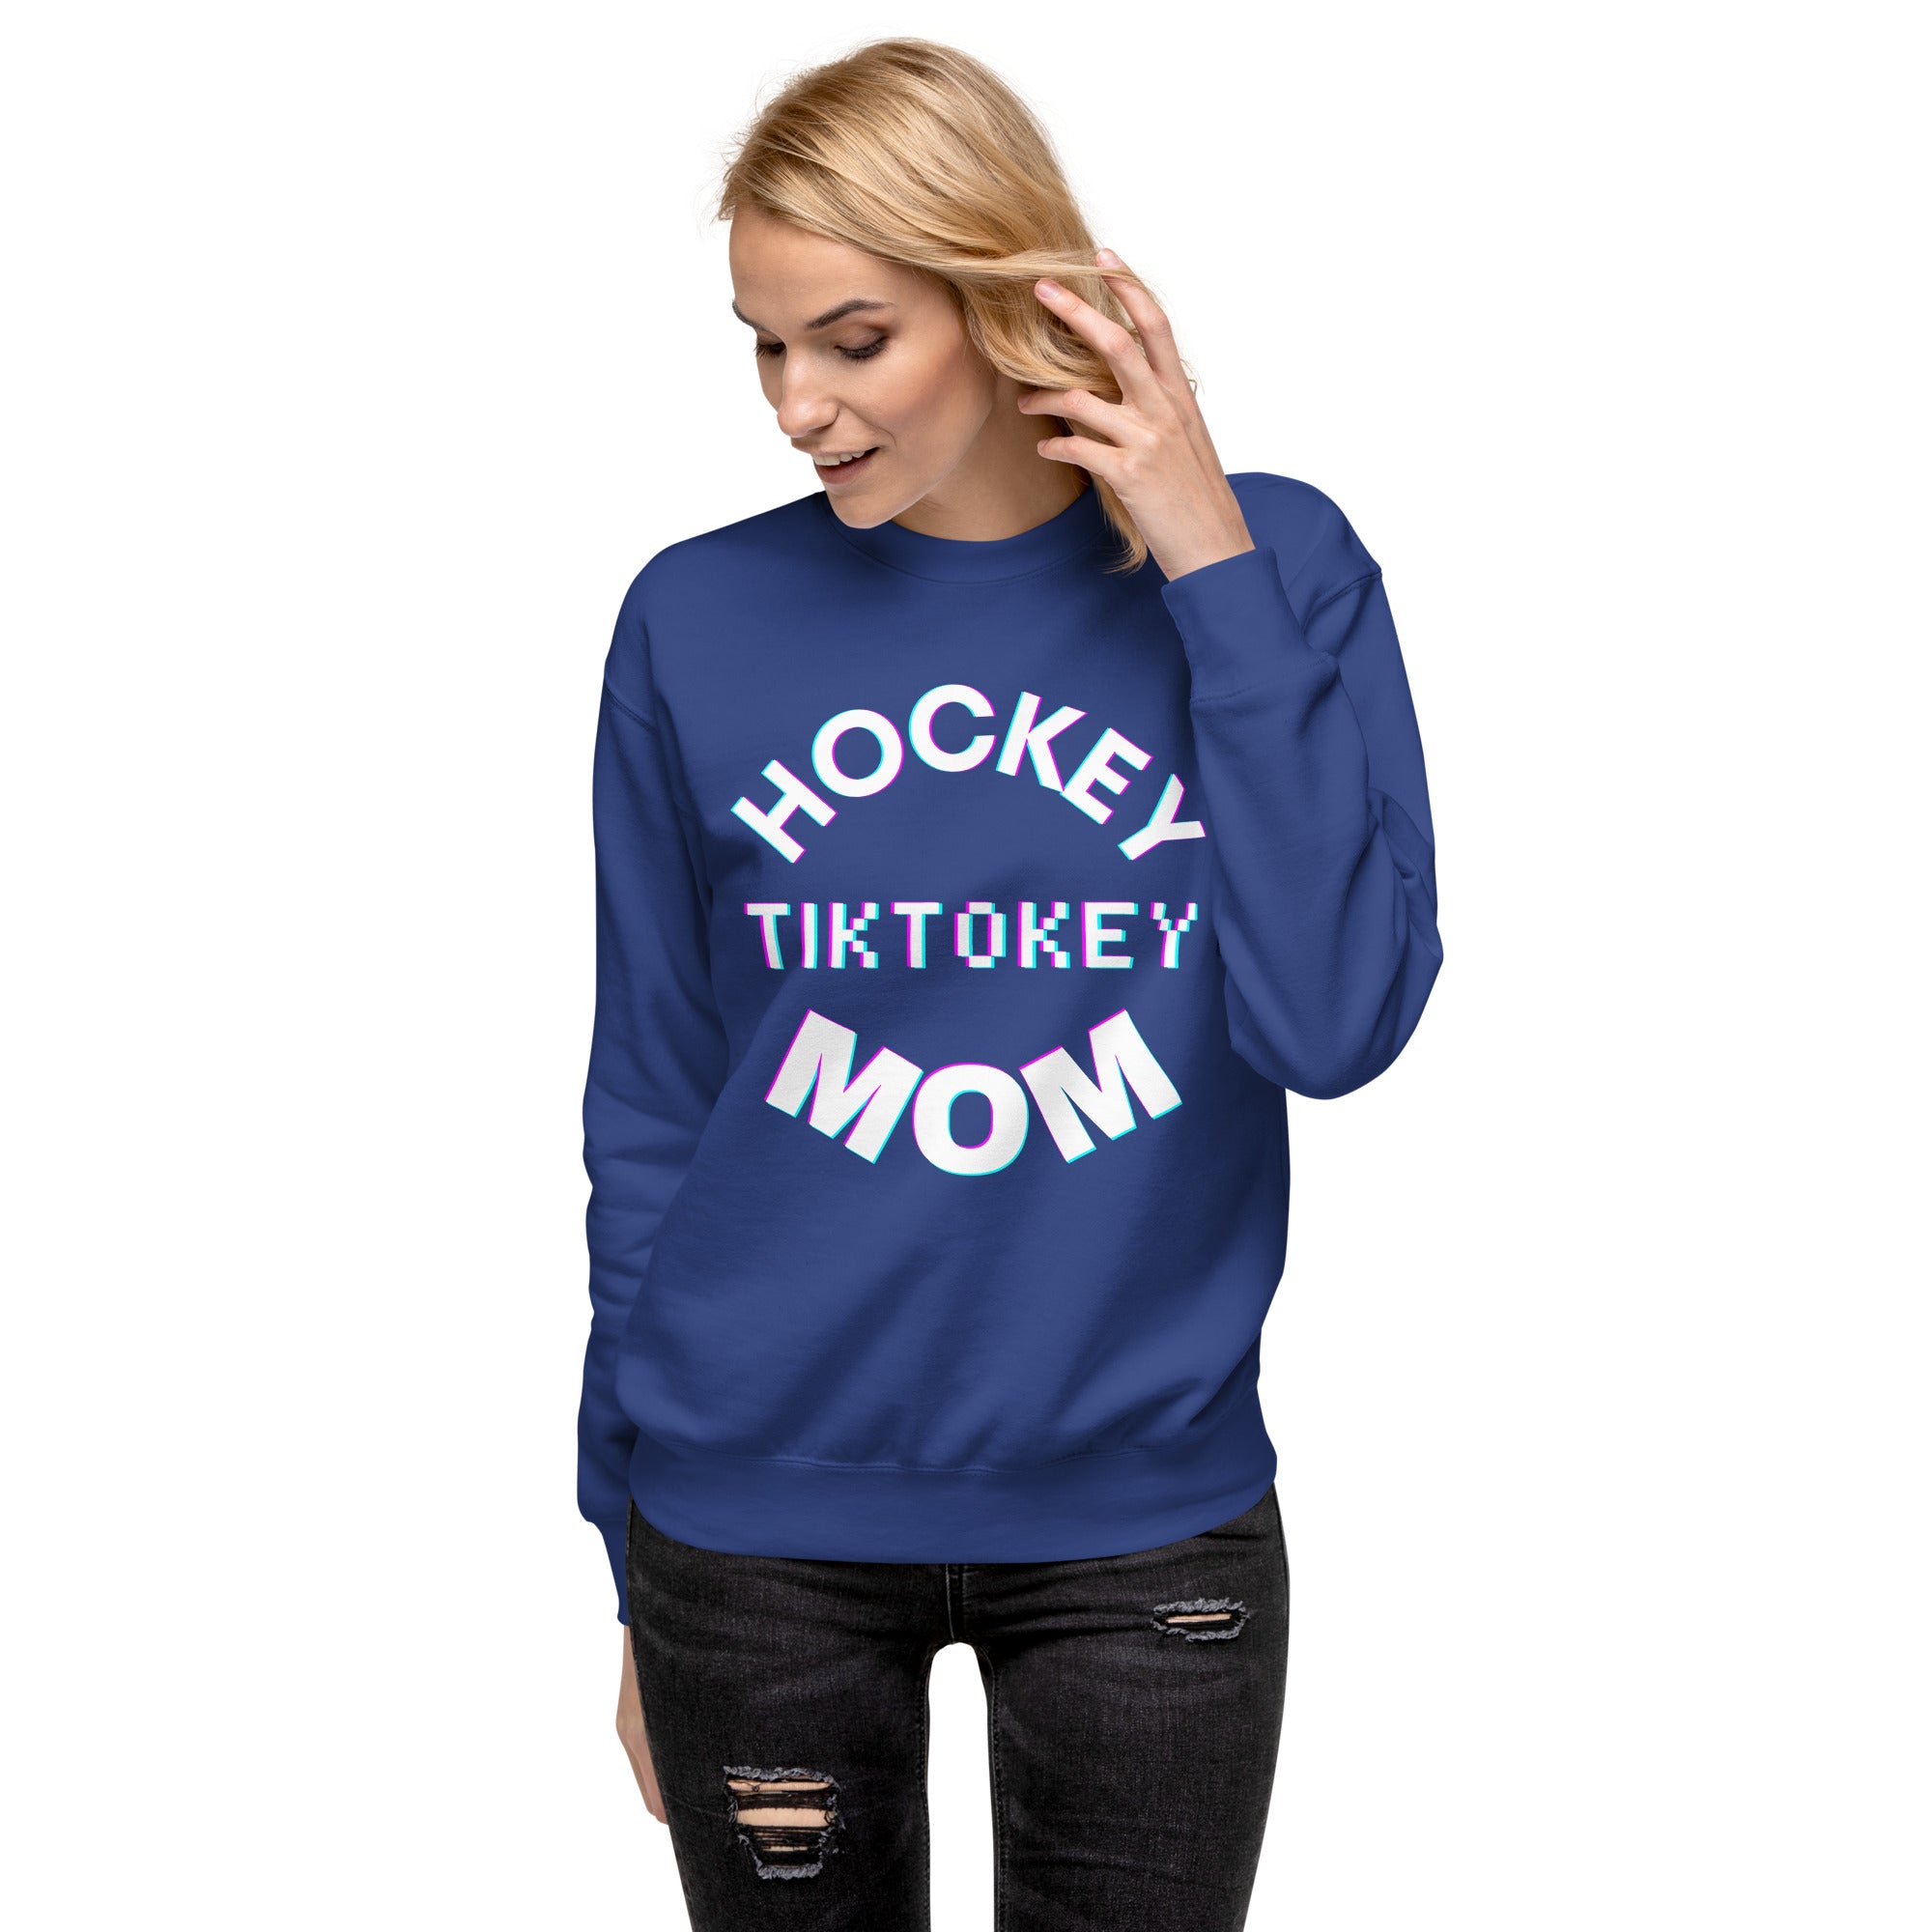 Hockey Tiktokey Women's Premium Sweatshirt